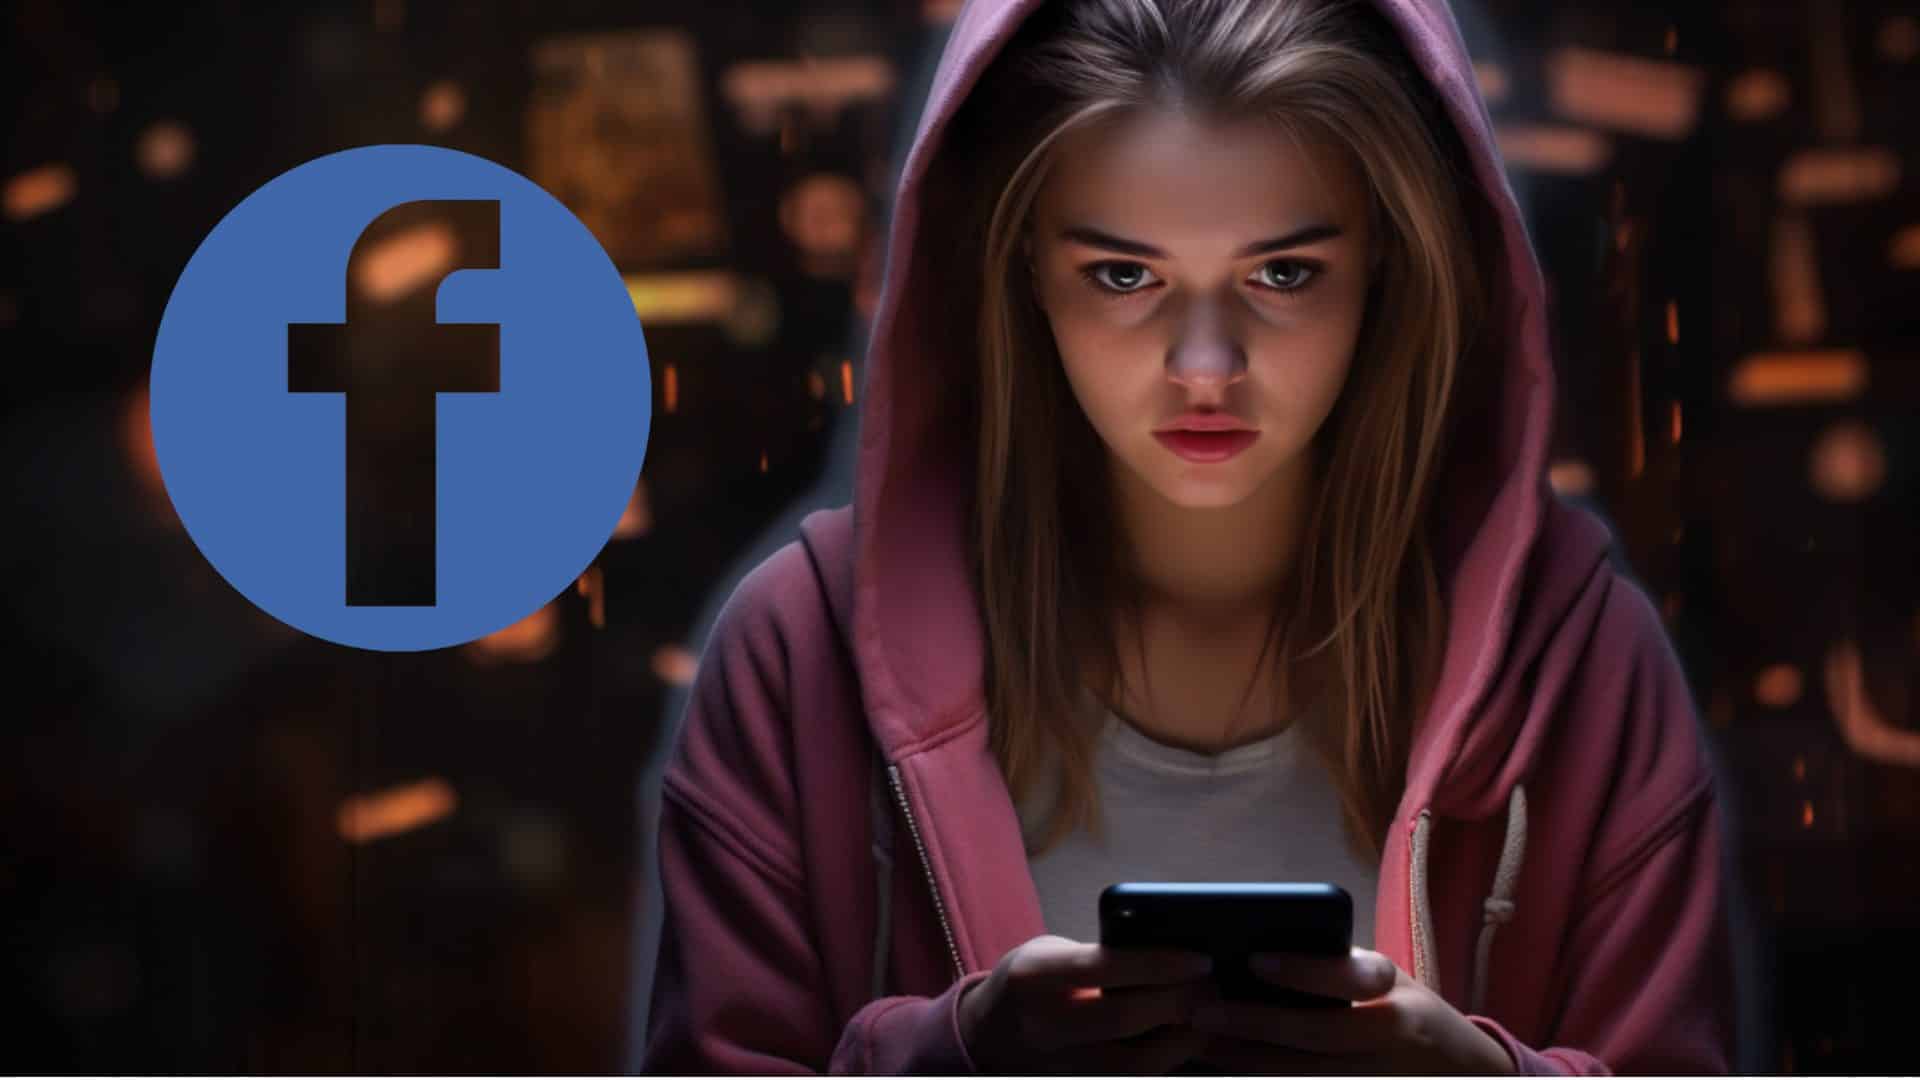 Chica observa su móvil mientras busca quién la espía en Facebook